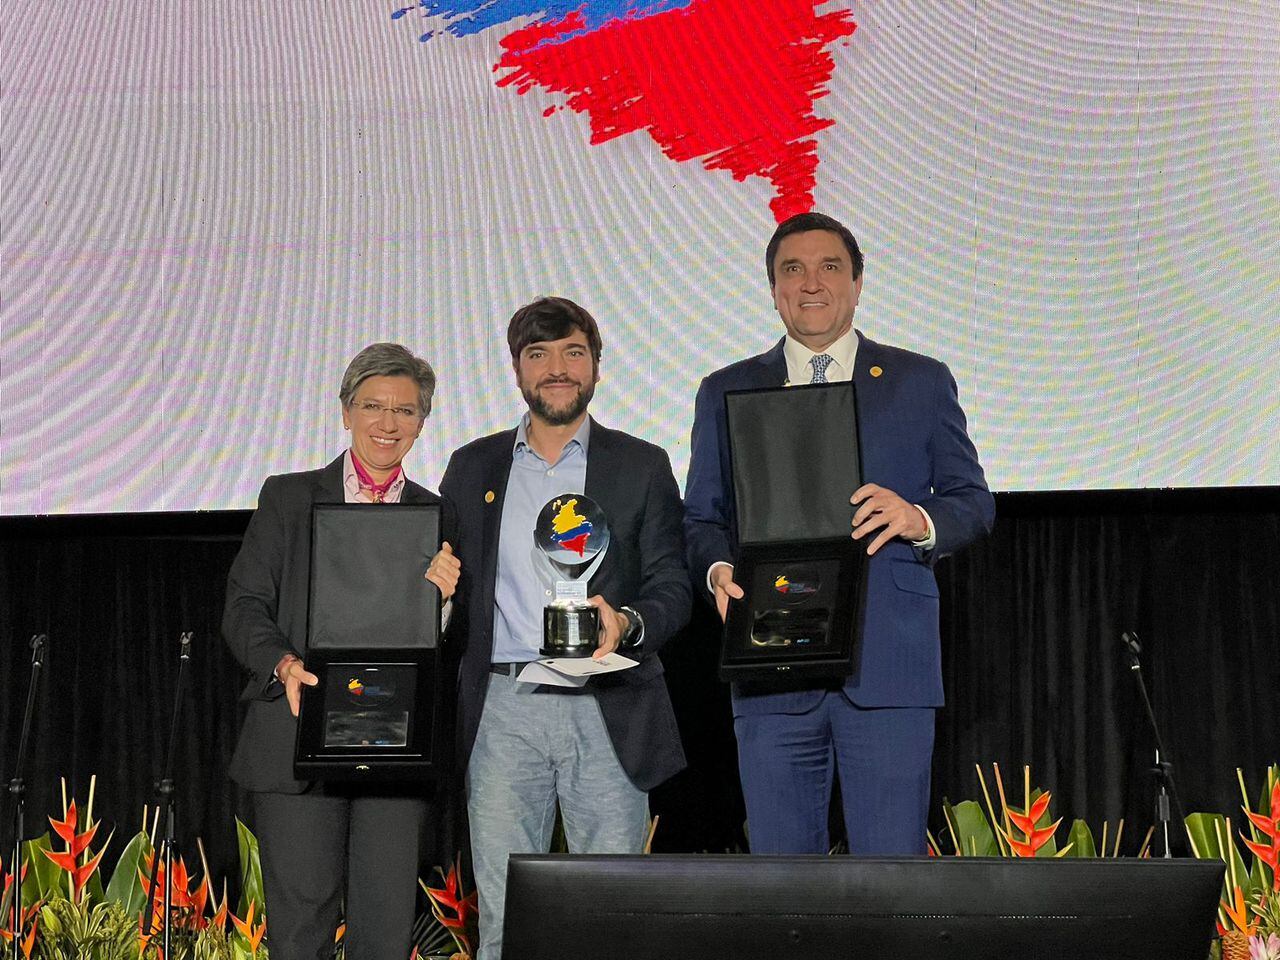 Jaime Pumarejo, en el centro, con el premio a mejor gobernante del país